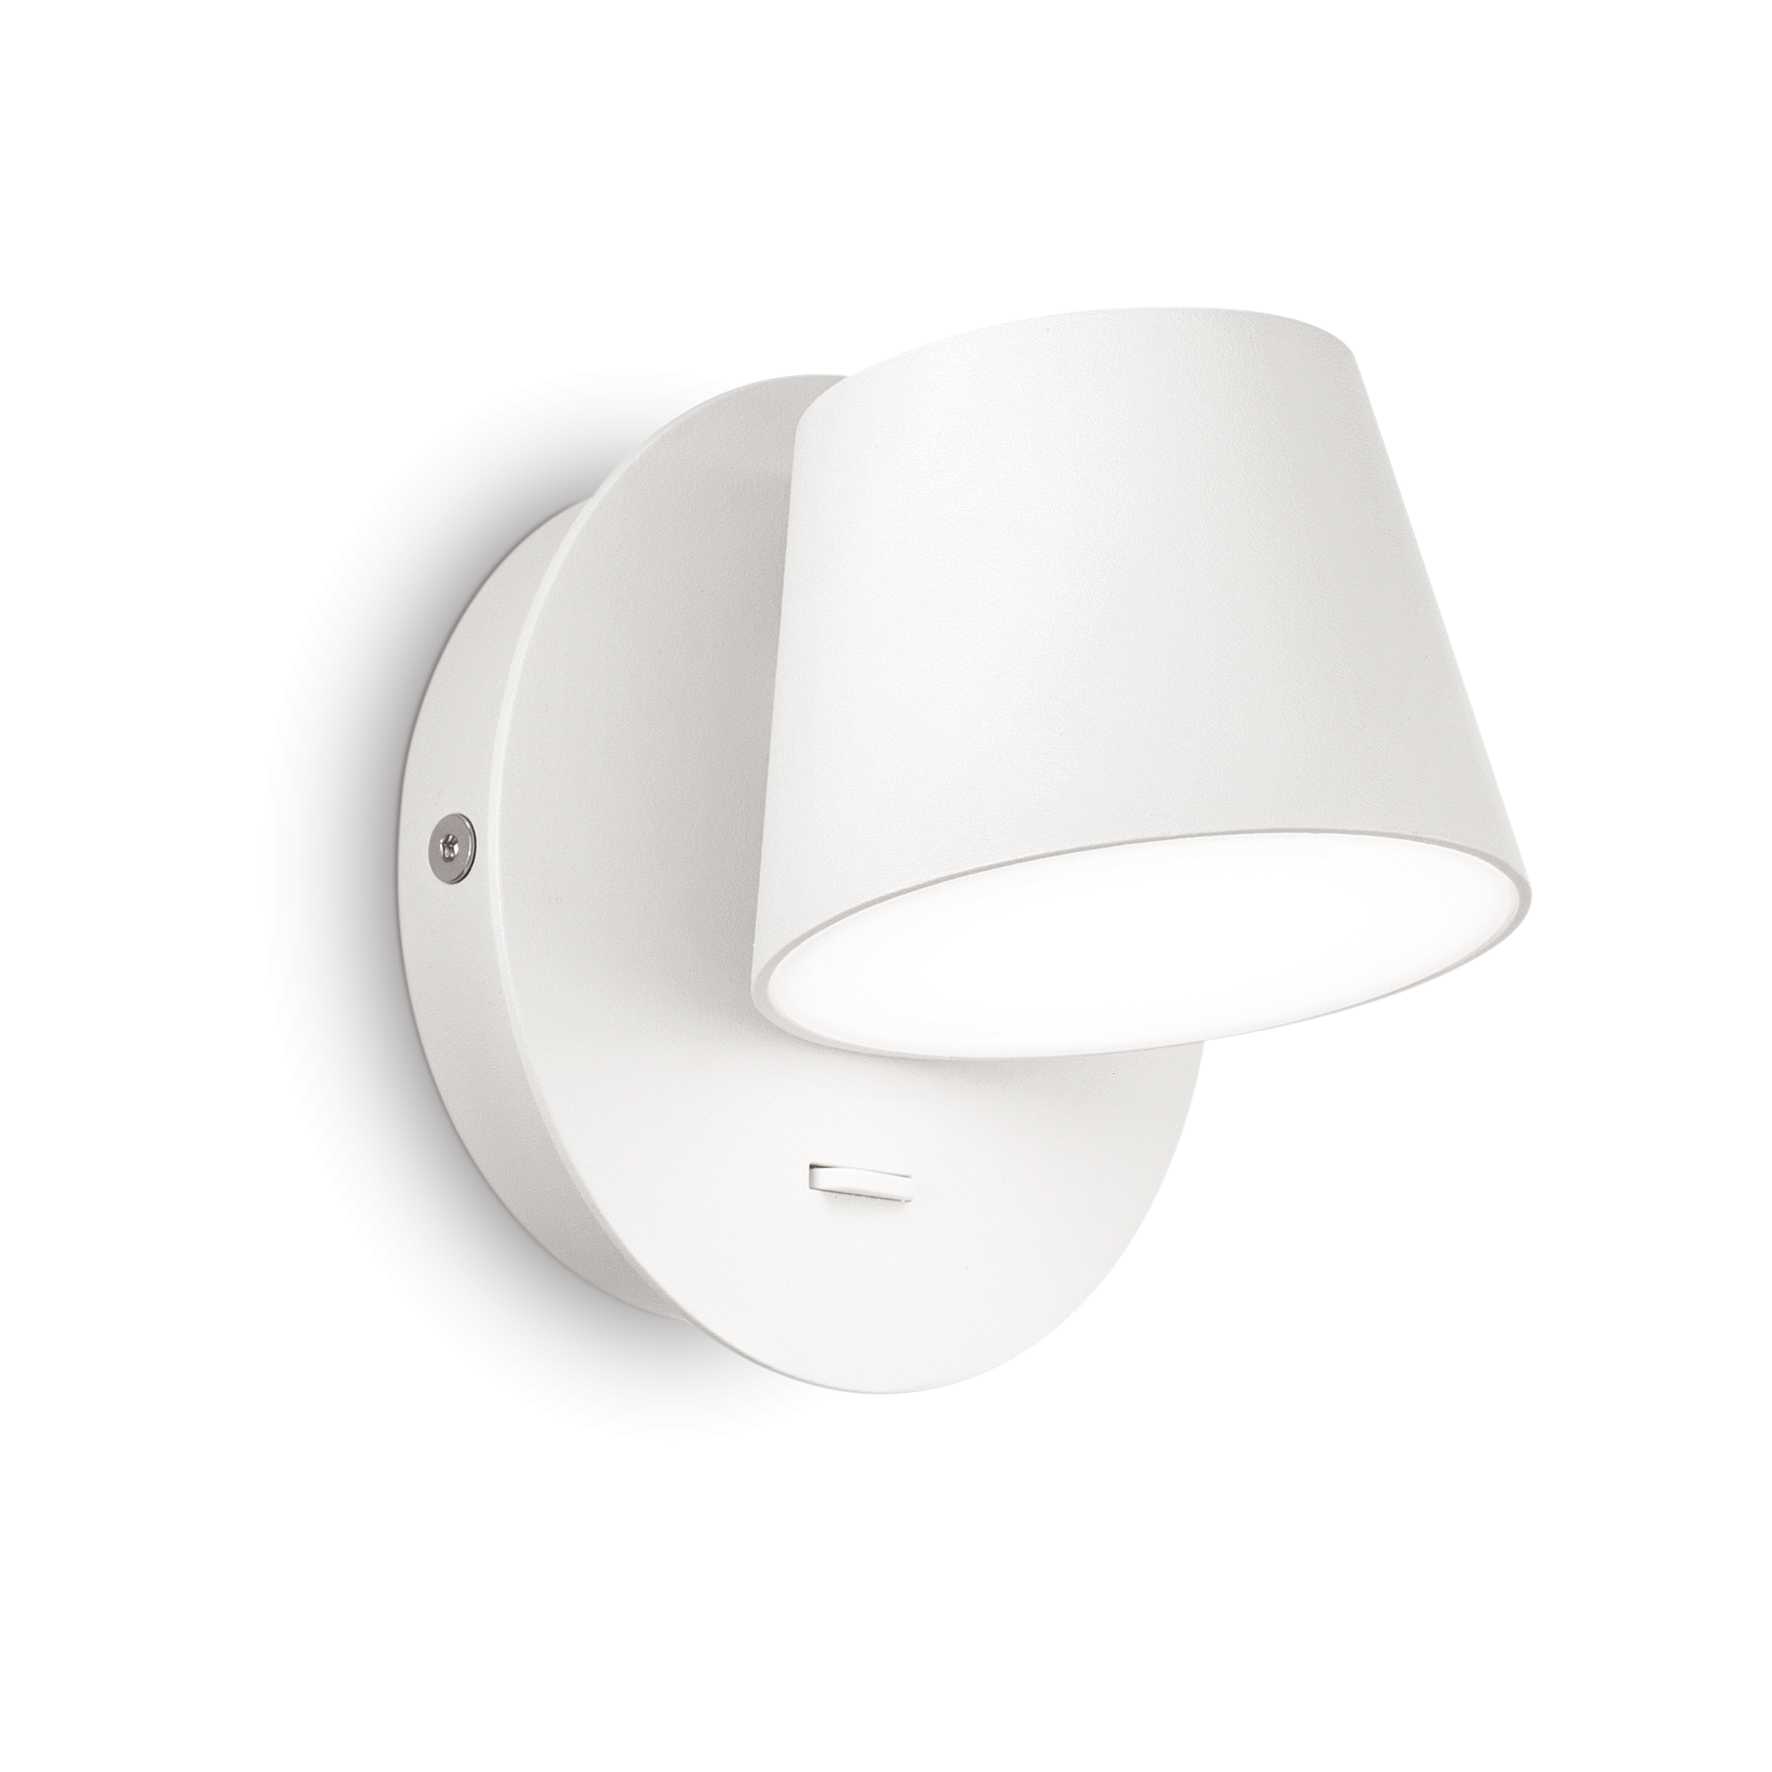 AD hotelska oprema Zidna lampa Gim ap- Bijele boje slika proizvoda